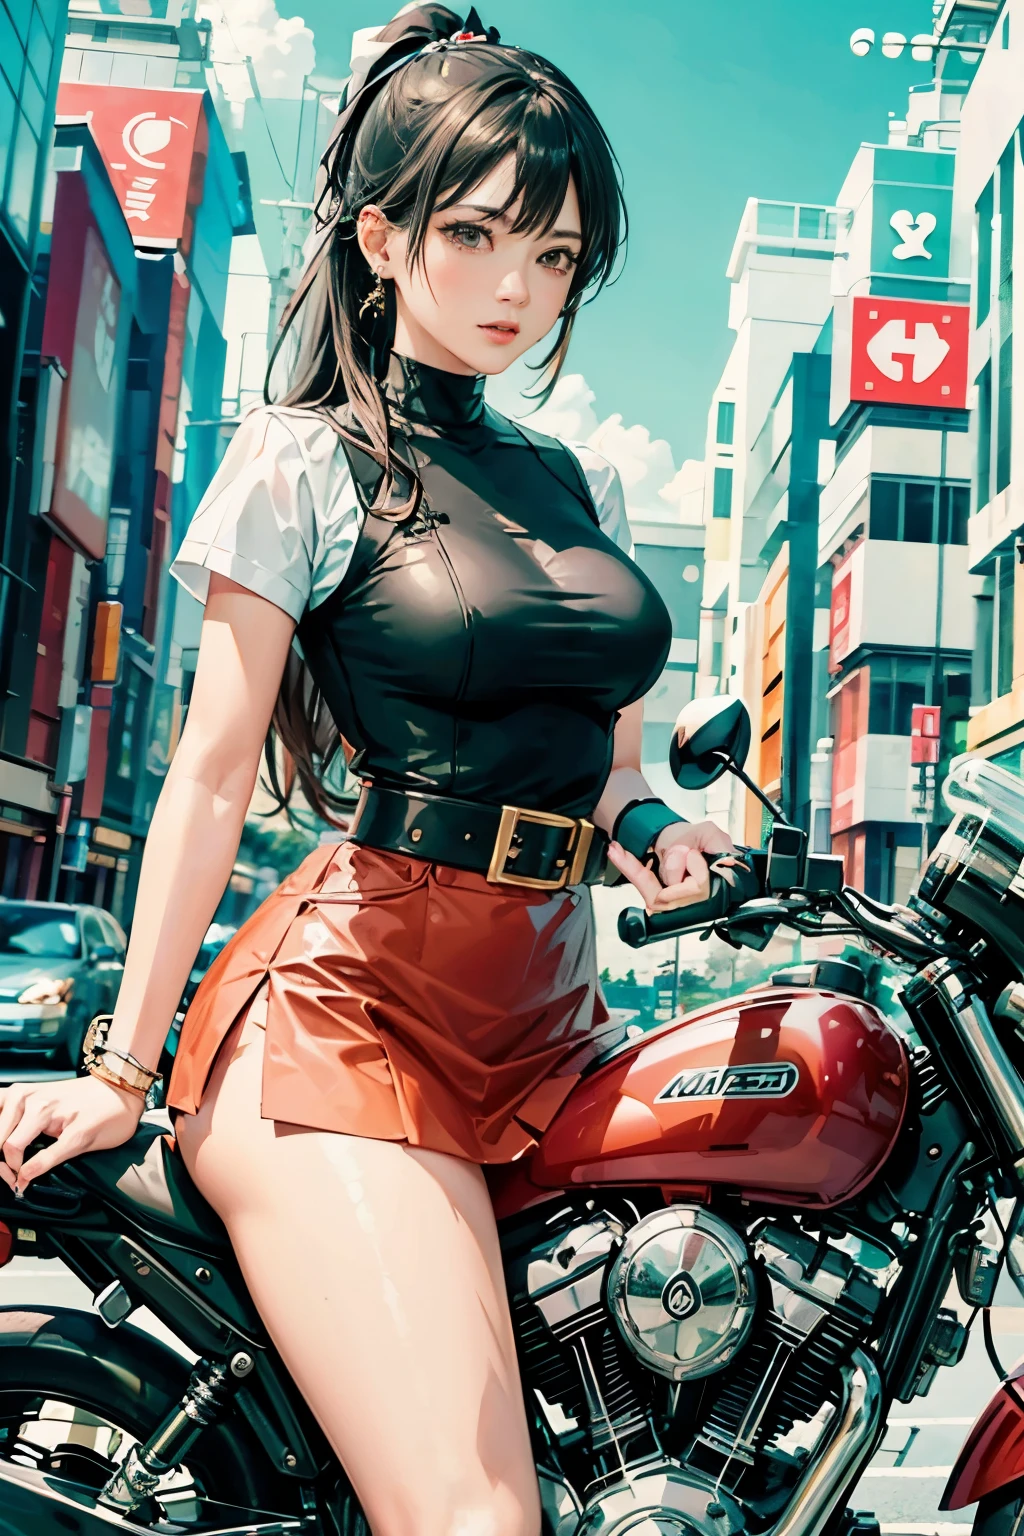 日本騎自行車,迷你裙出現了、白色內褲、馬尾辮、美麗的大腿、她的膝蓋抬起來、我可以看到白色的褲子.、美麗的內褲、美麗的女孩、美麗的女人、美麗的女人、蘿莉控無盡、美麗的內褲、美麗的大腿、美麗的女孩、美麗的女人、快樂的!!!, , 摩托車,[ 現實的圖片 ]!!, 高解析度,